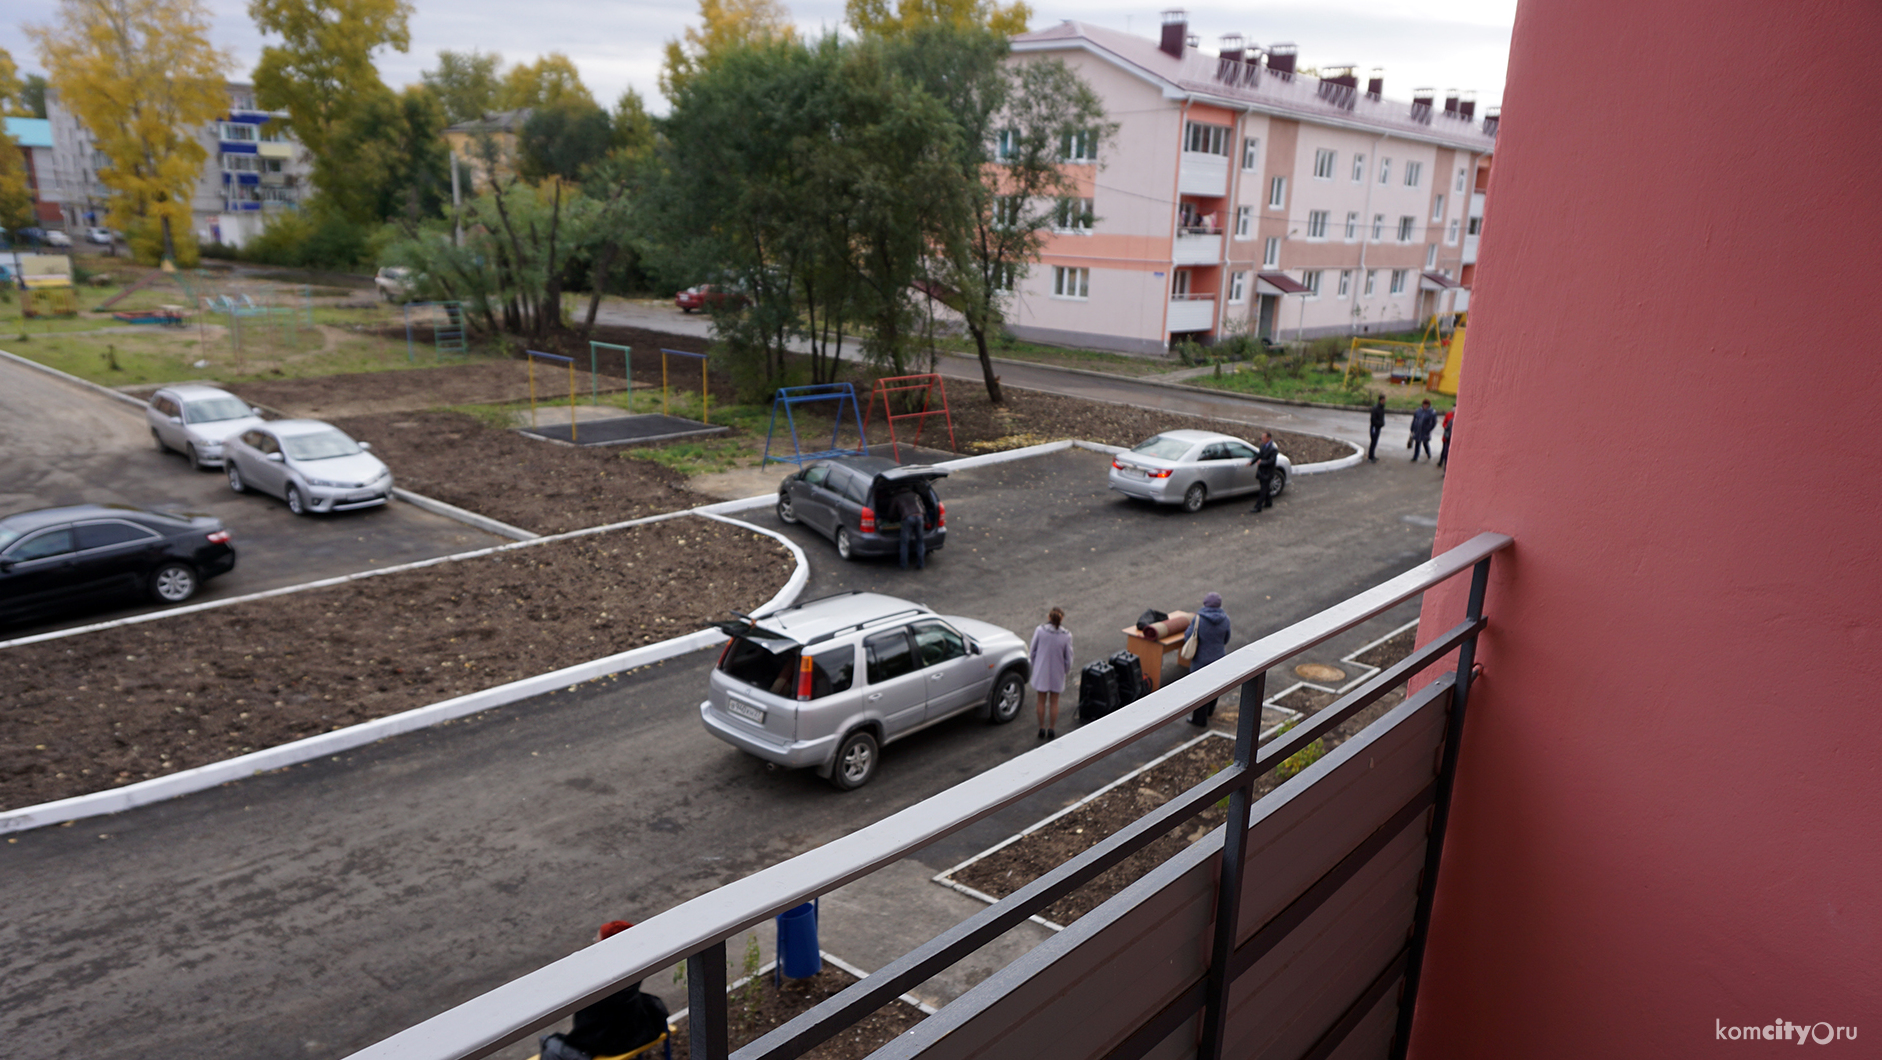 Руководитель Фонда реформирования ЖКХ осмотрит в Комсомольске дома, построенные для расселения ветхого фонда